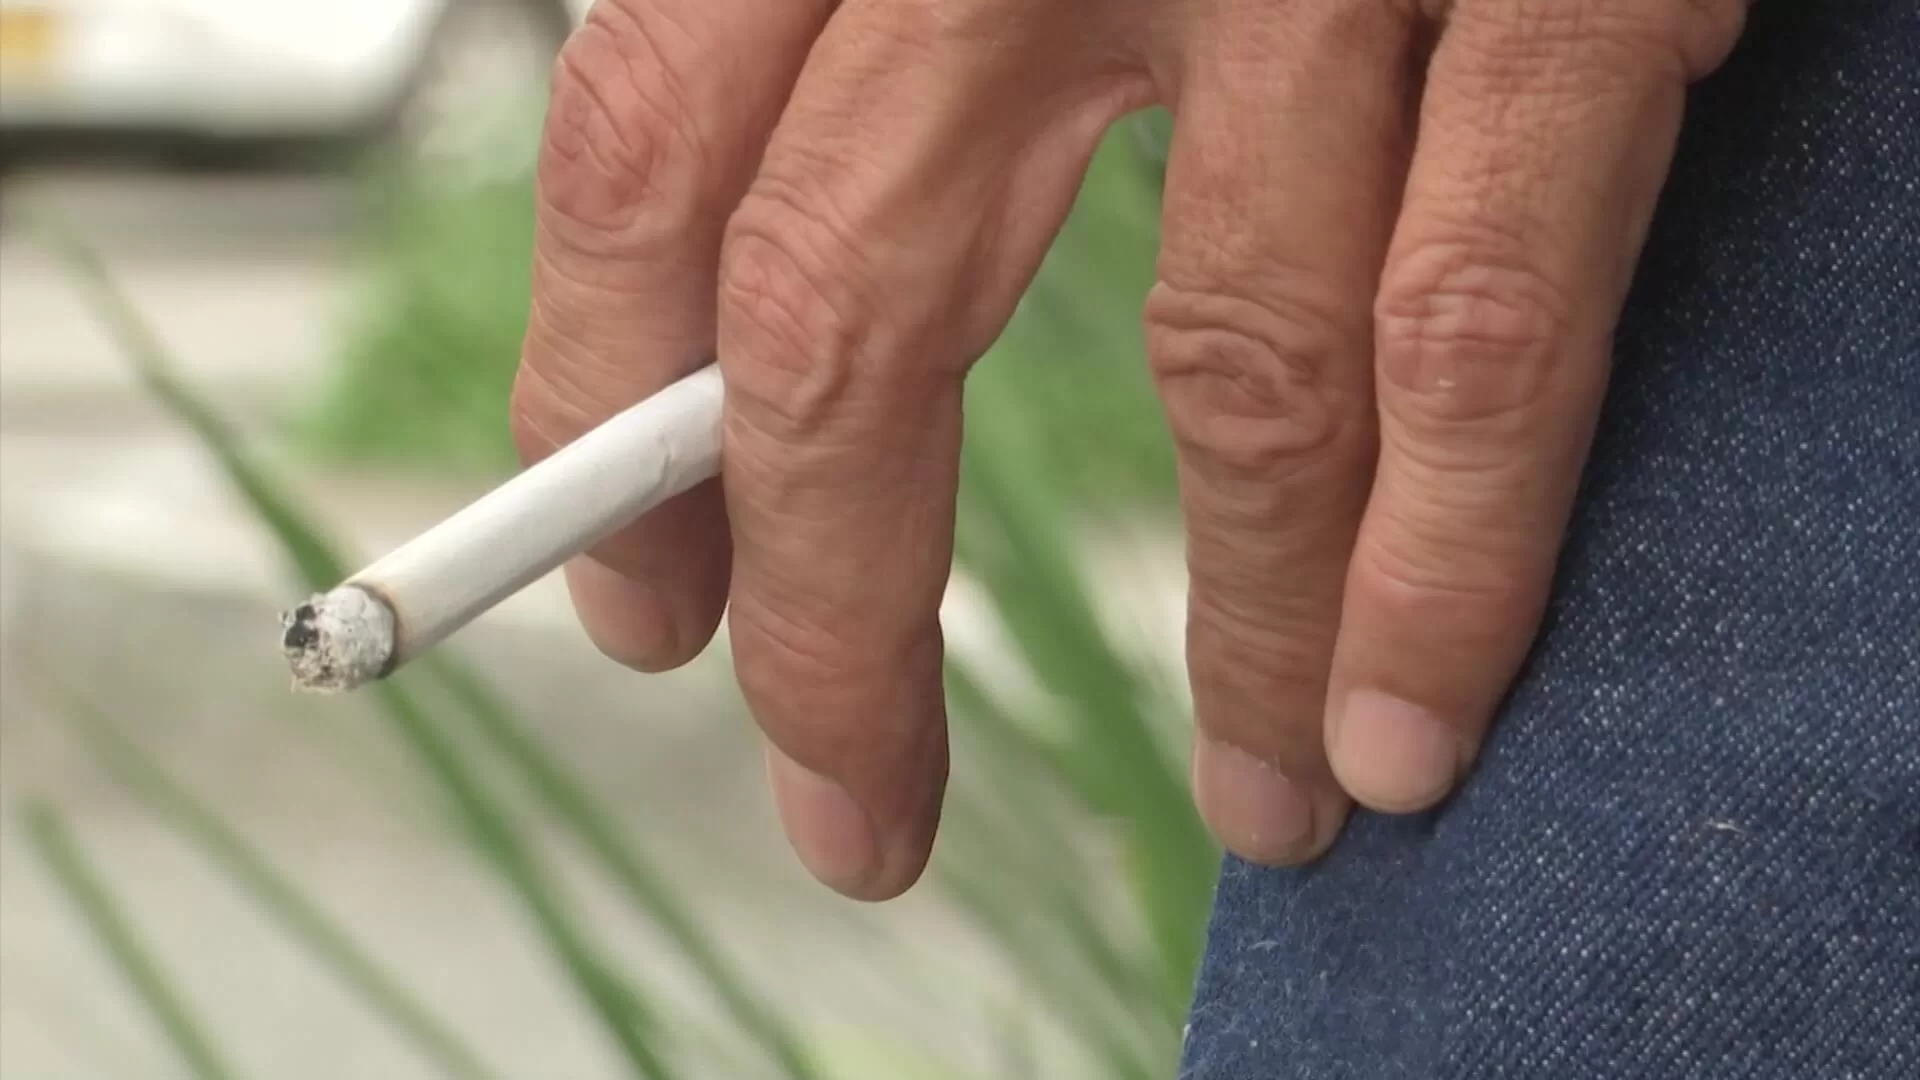 Fumador: el cigarrillo que tiene en sus manos podría ser de contrabando